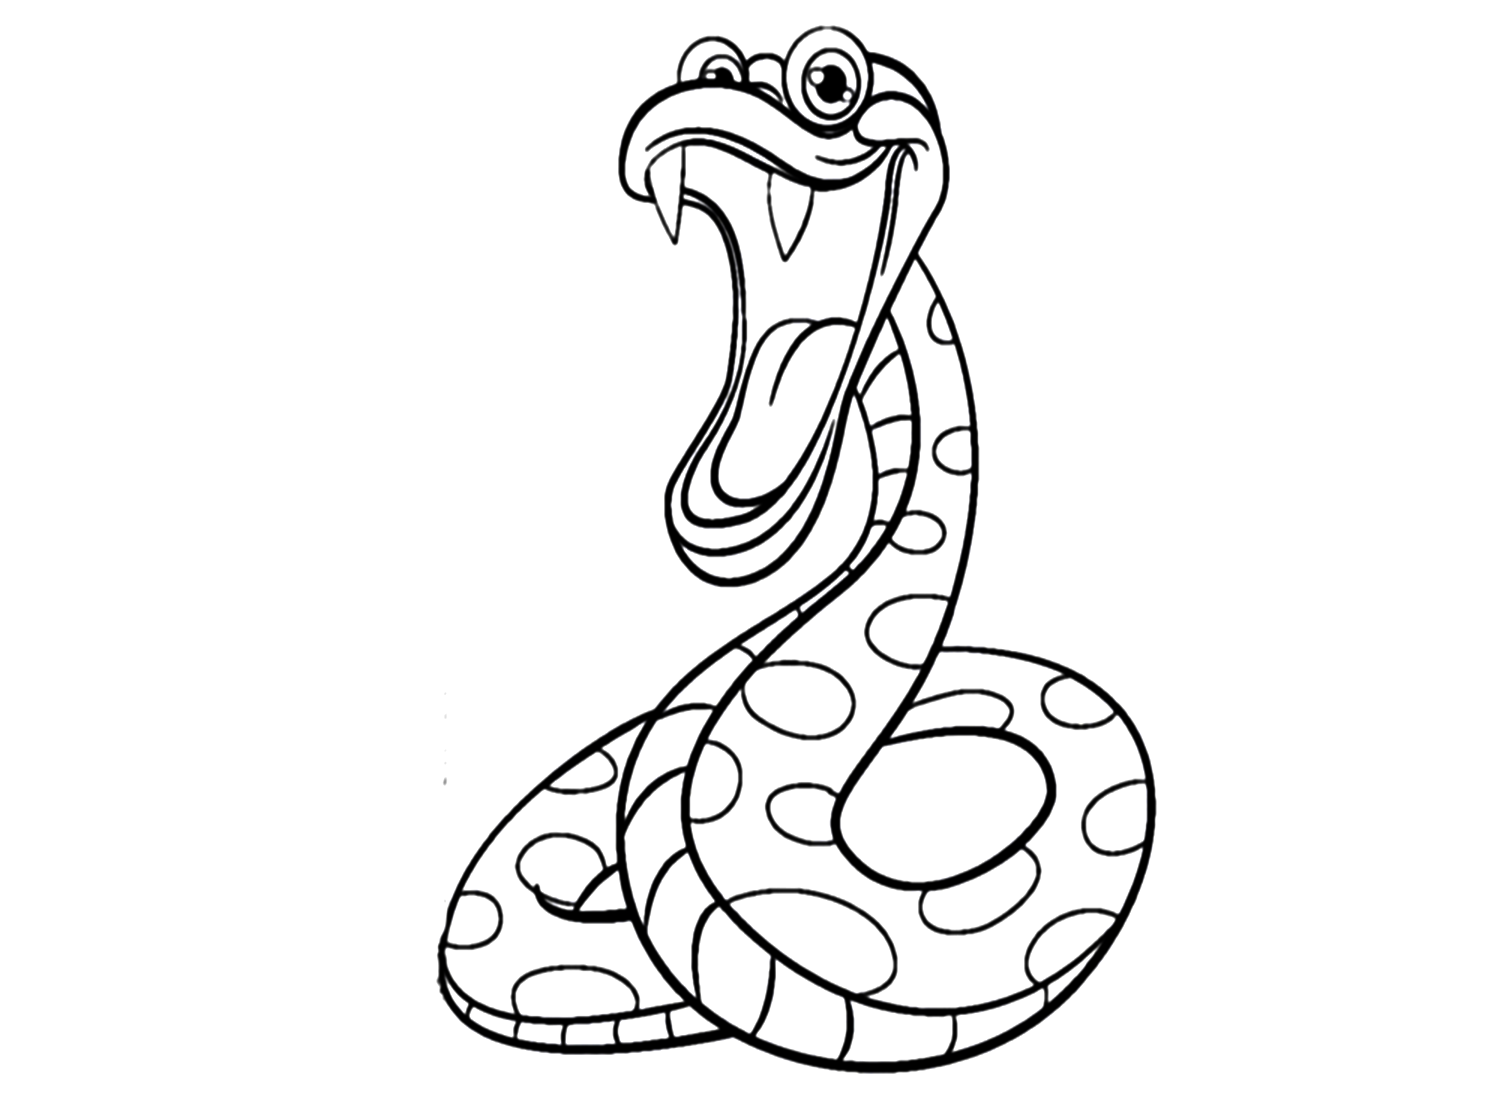 Раскраска Poka Python для детей от Python